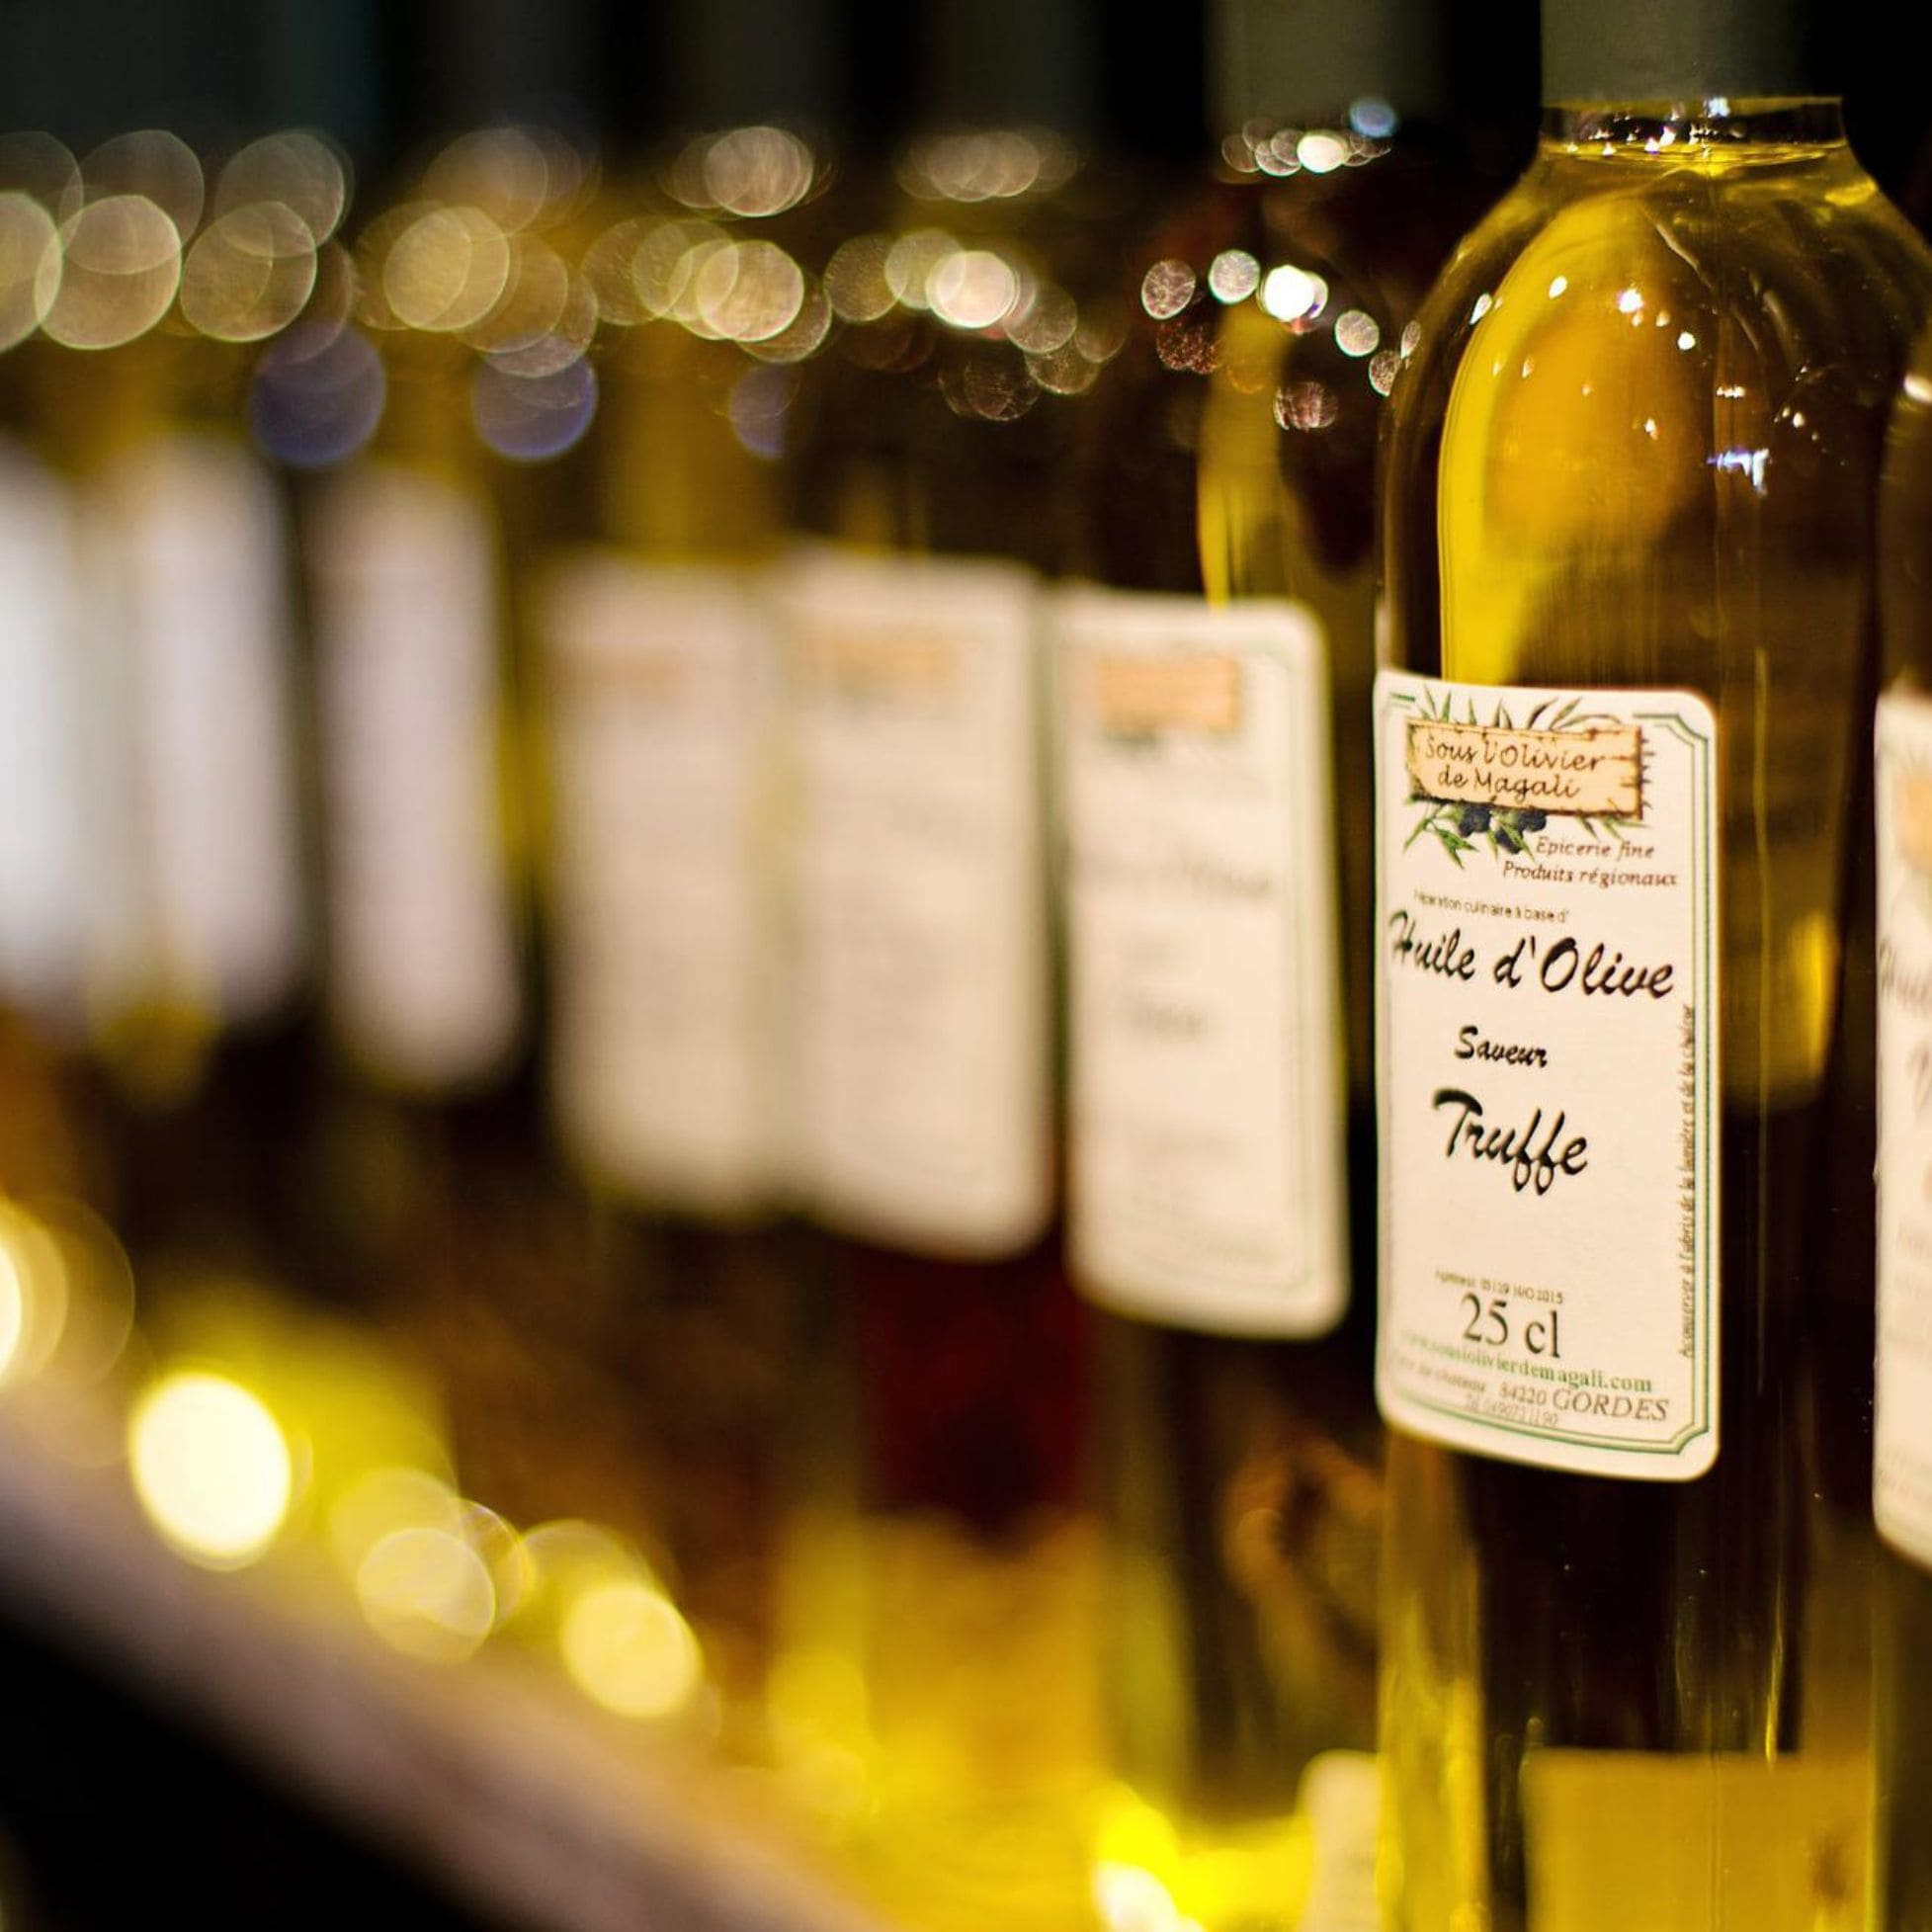 Bouteilles d'huiles d'olive avec étiquettes adhésive similaire à celles produites sur le service d'impression Yetiq.pro